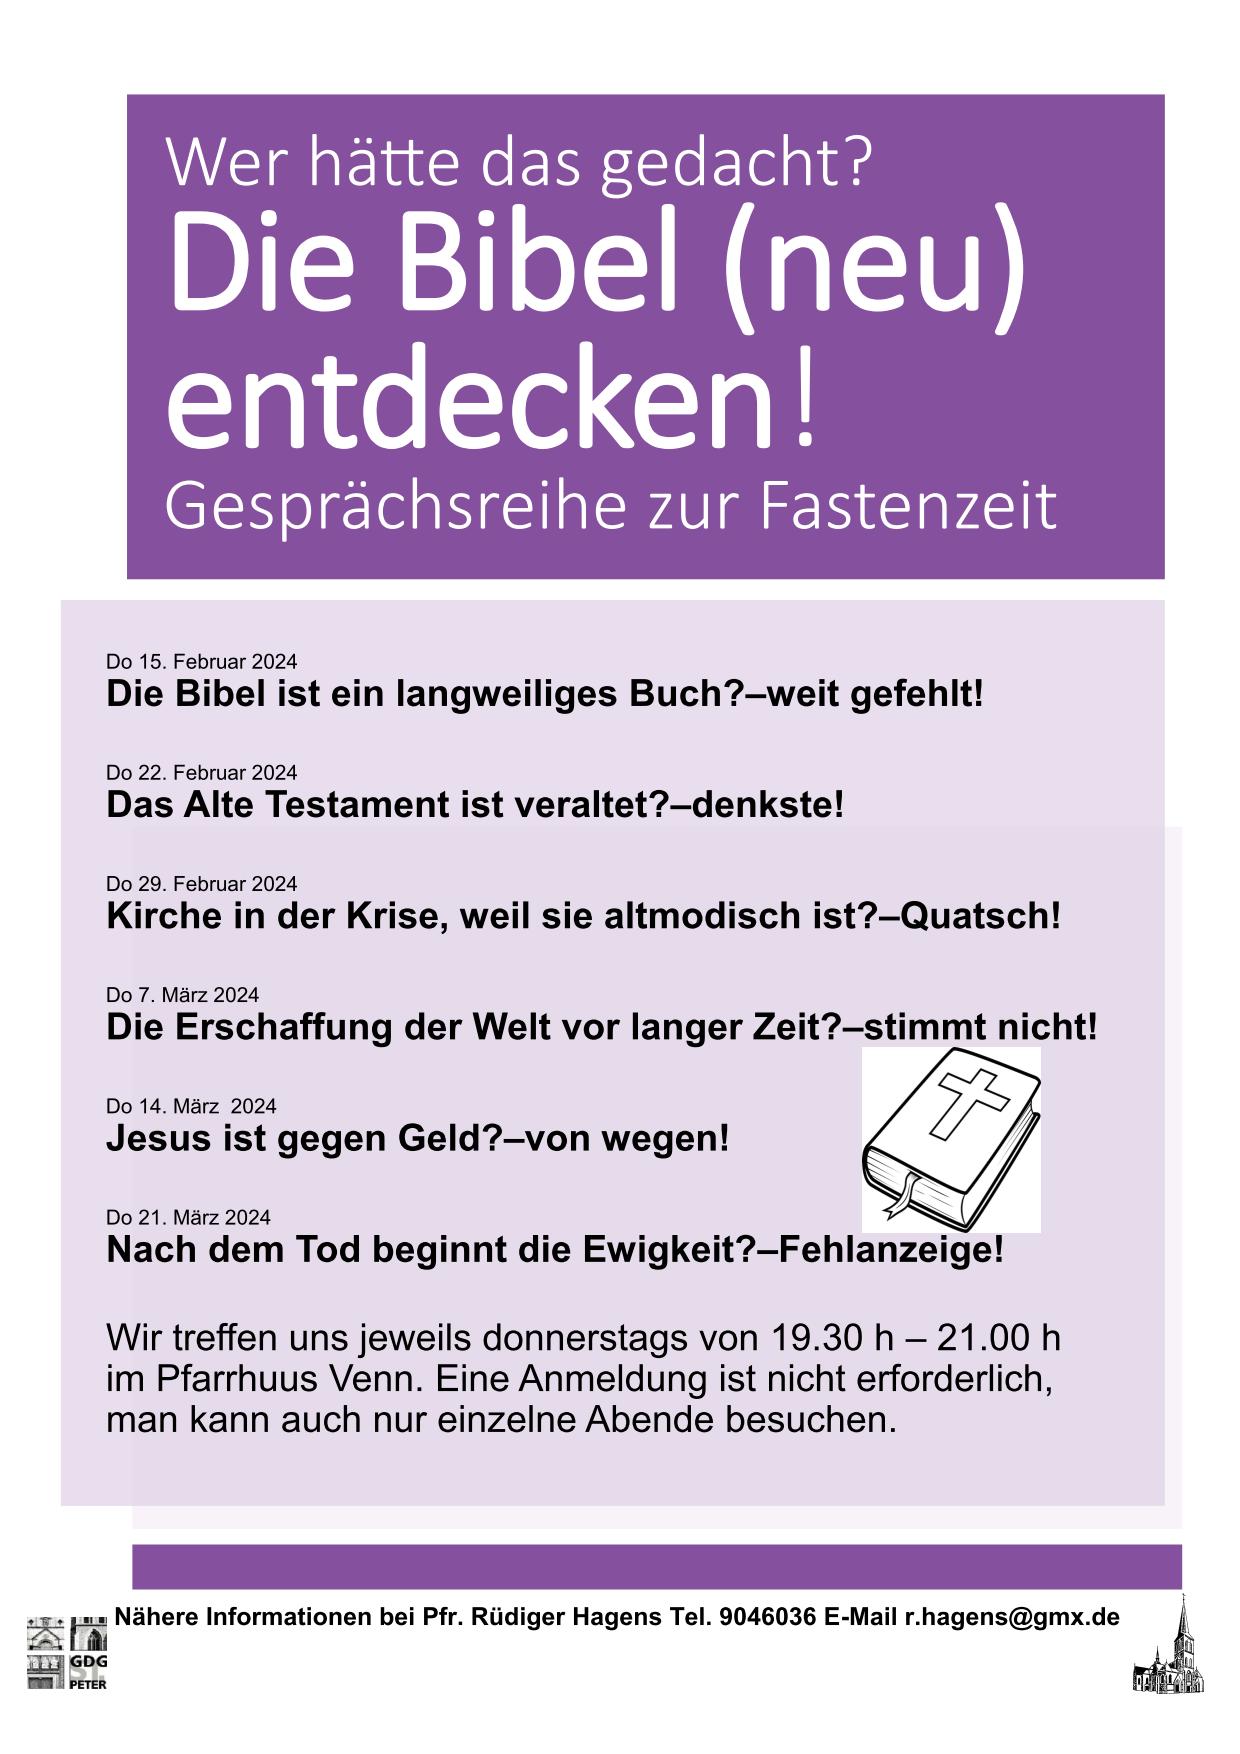 Bibel neu entdecken (c) Pfr. Rüdiger Hagens E-Mail r.hagens@gmx.de